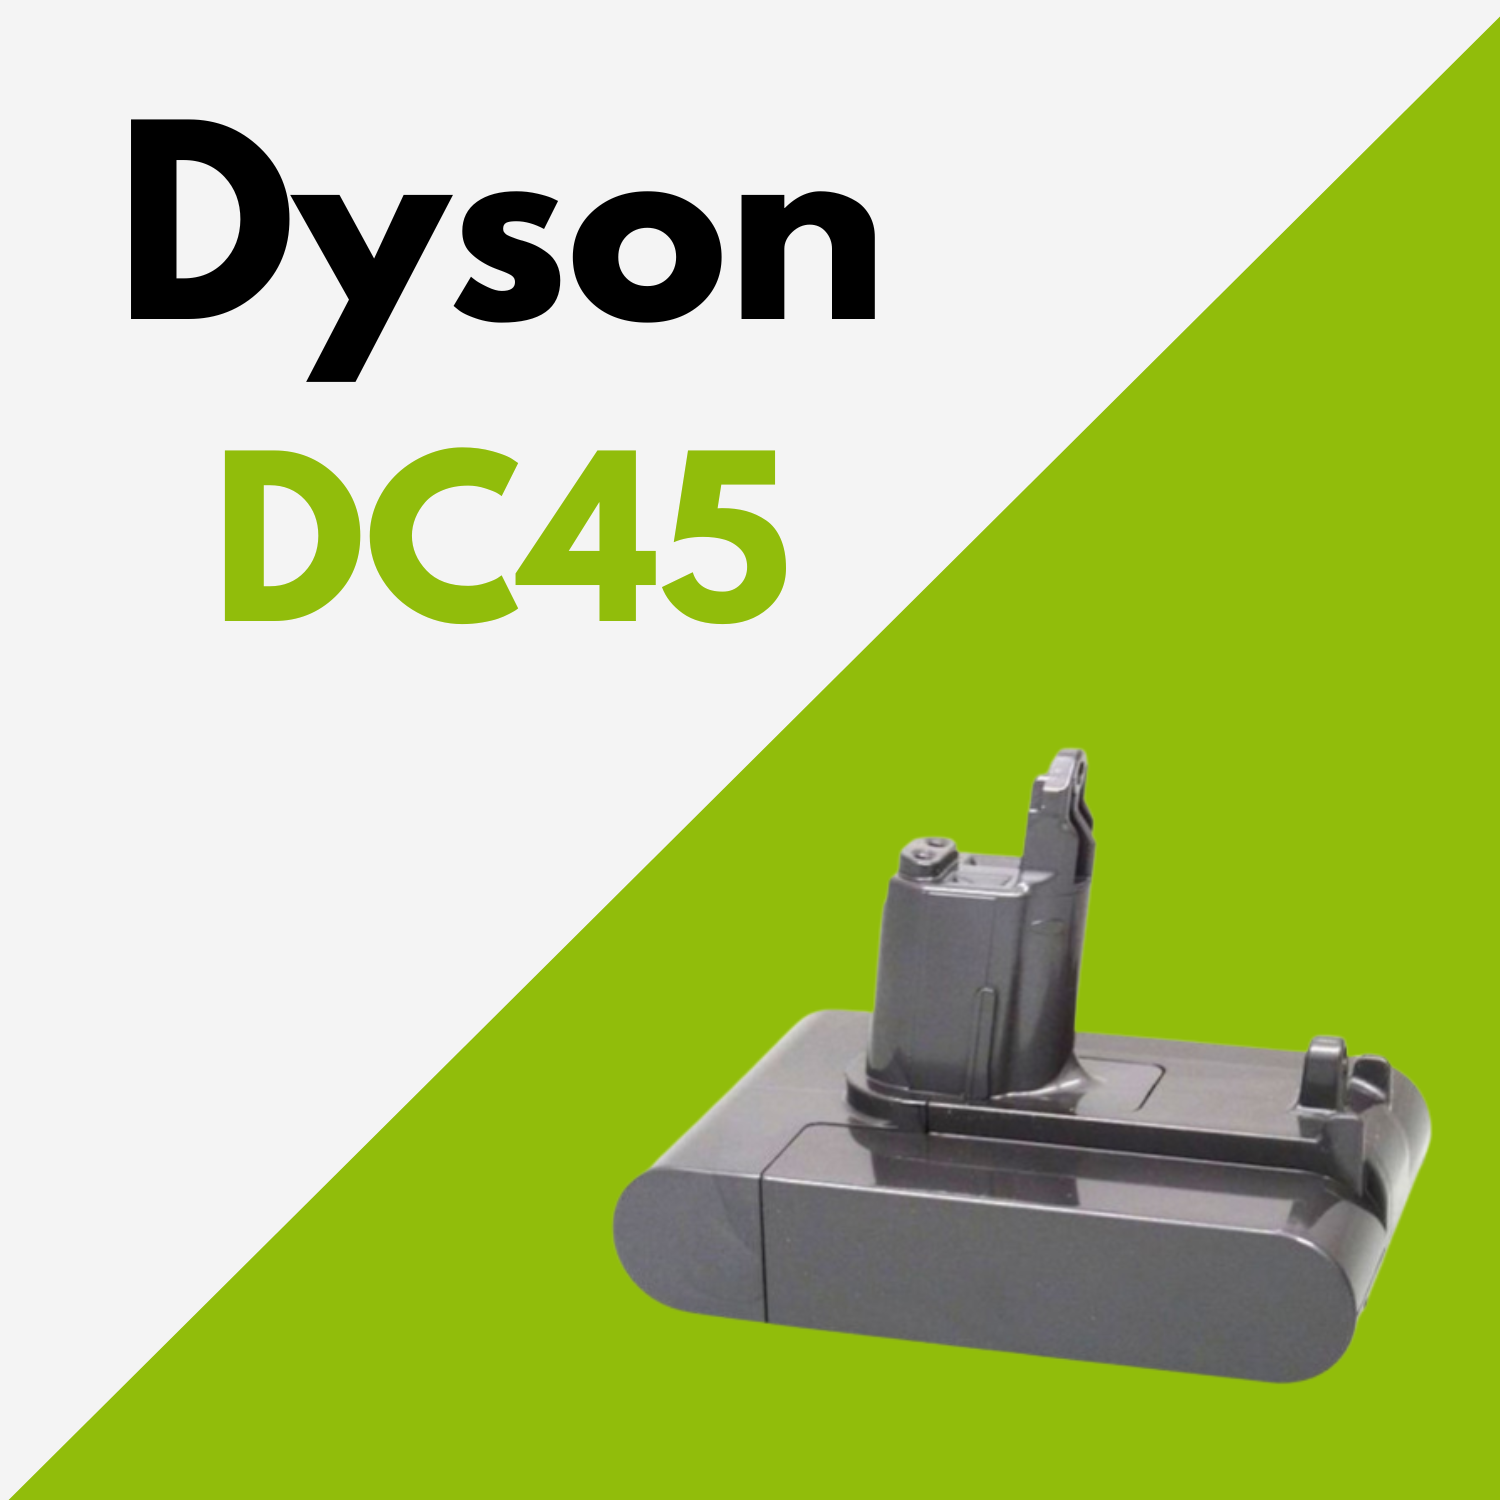 Batterie Dyson DC45 Type B au meilleur prix ! [PROMO]